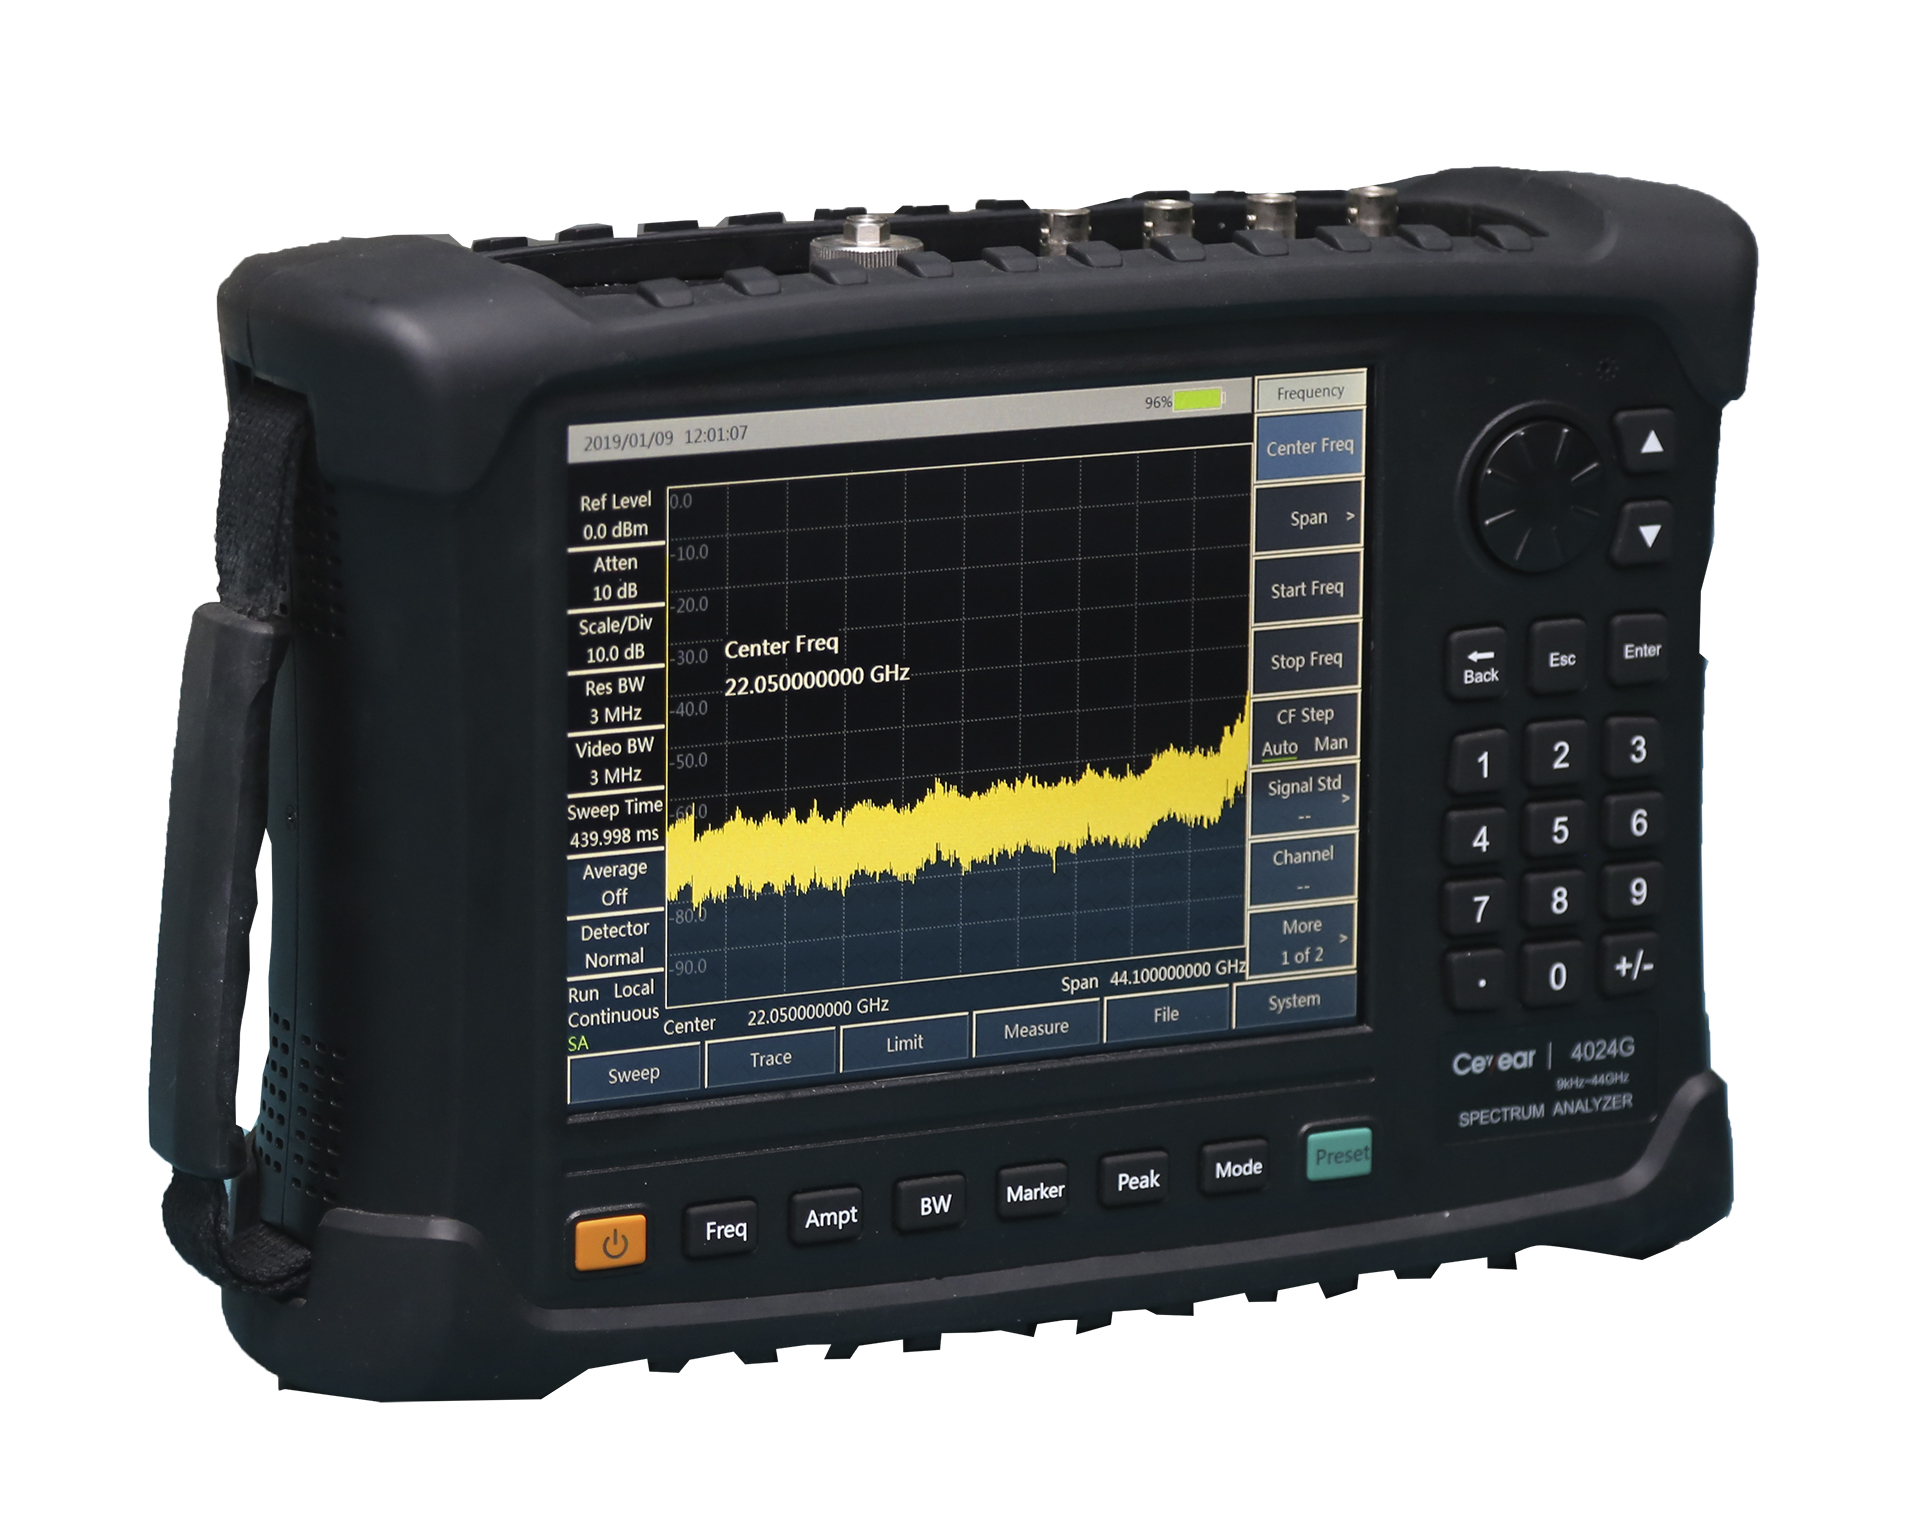 Портативные анализаторы спектраCeyear серии 4024:4024A/B/C/D/E/F/G/H/Lс диапазоном частот от 9 кГц до 67 ГГц